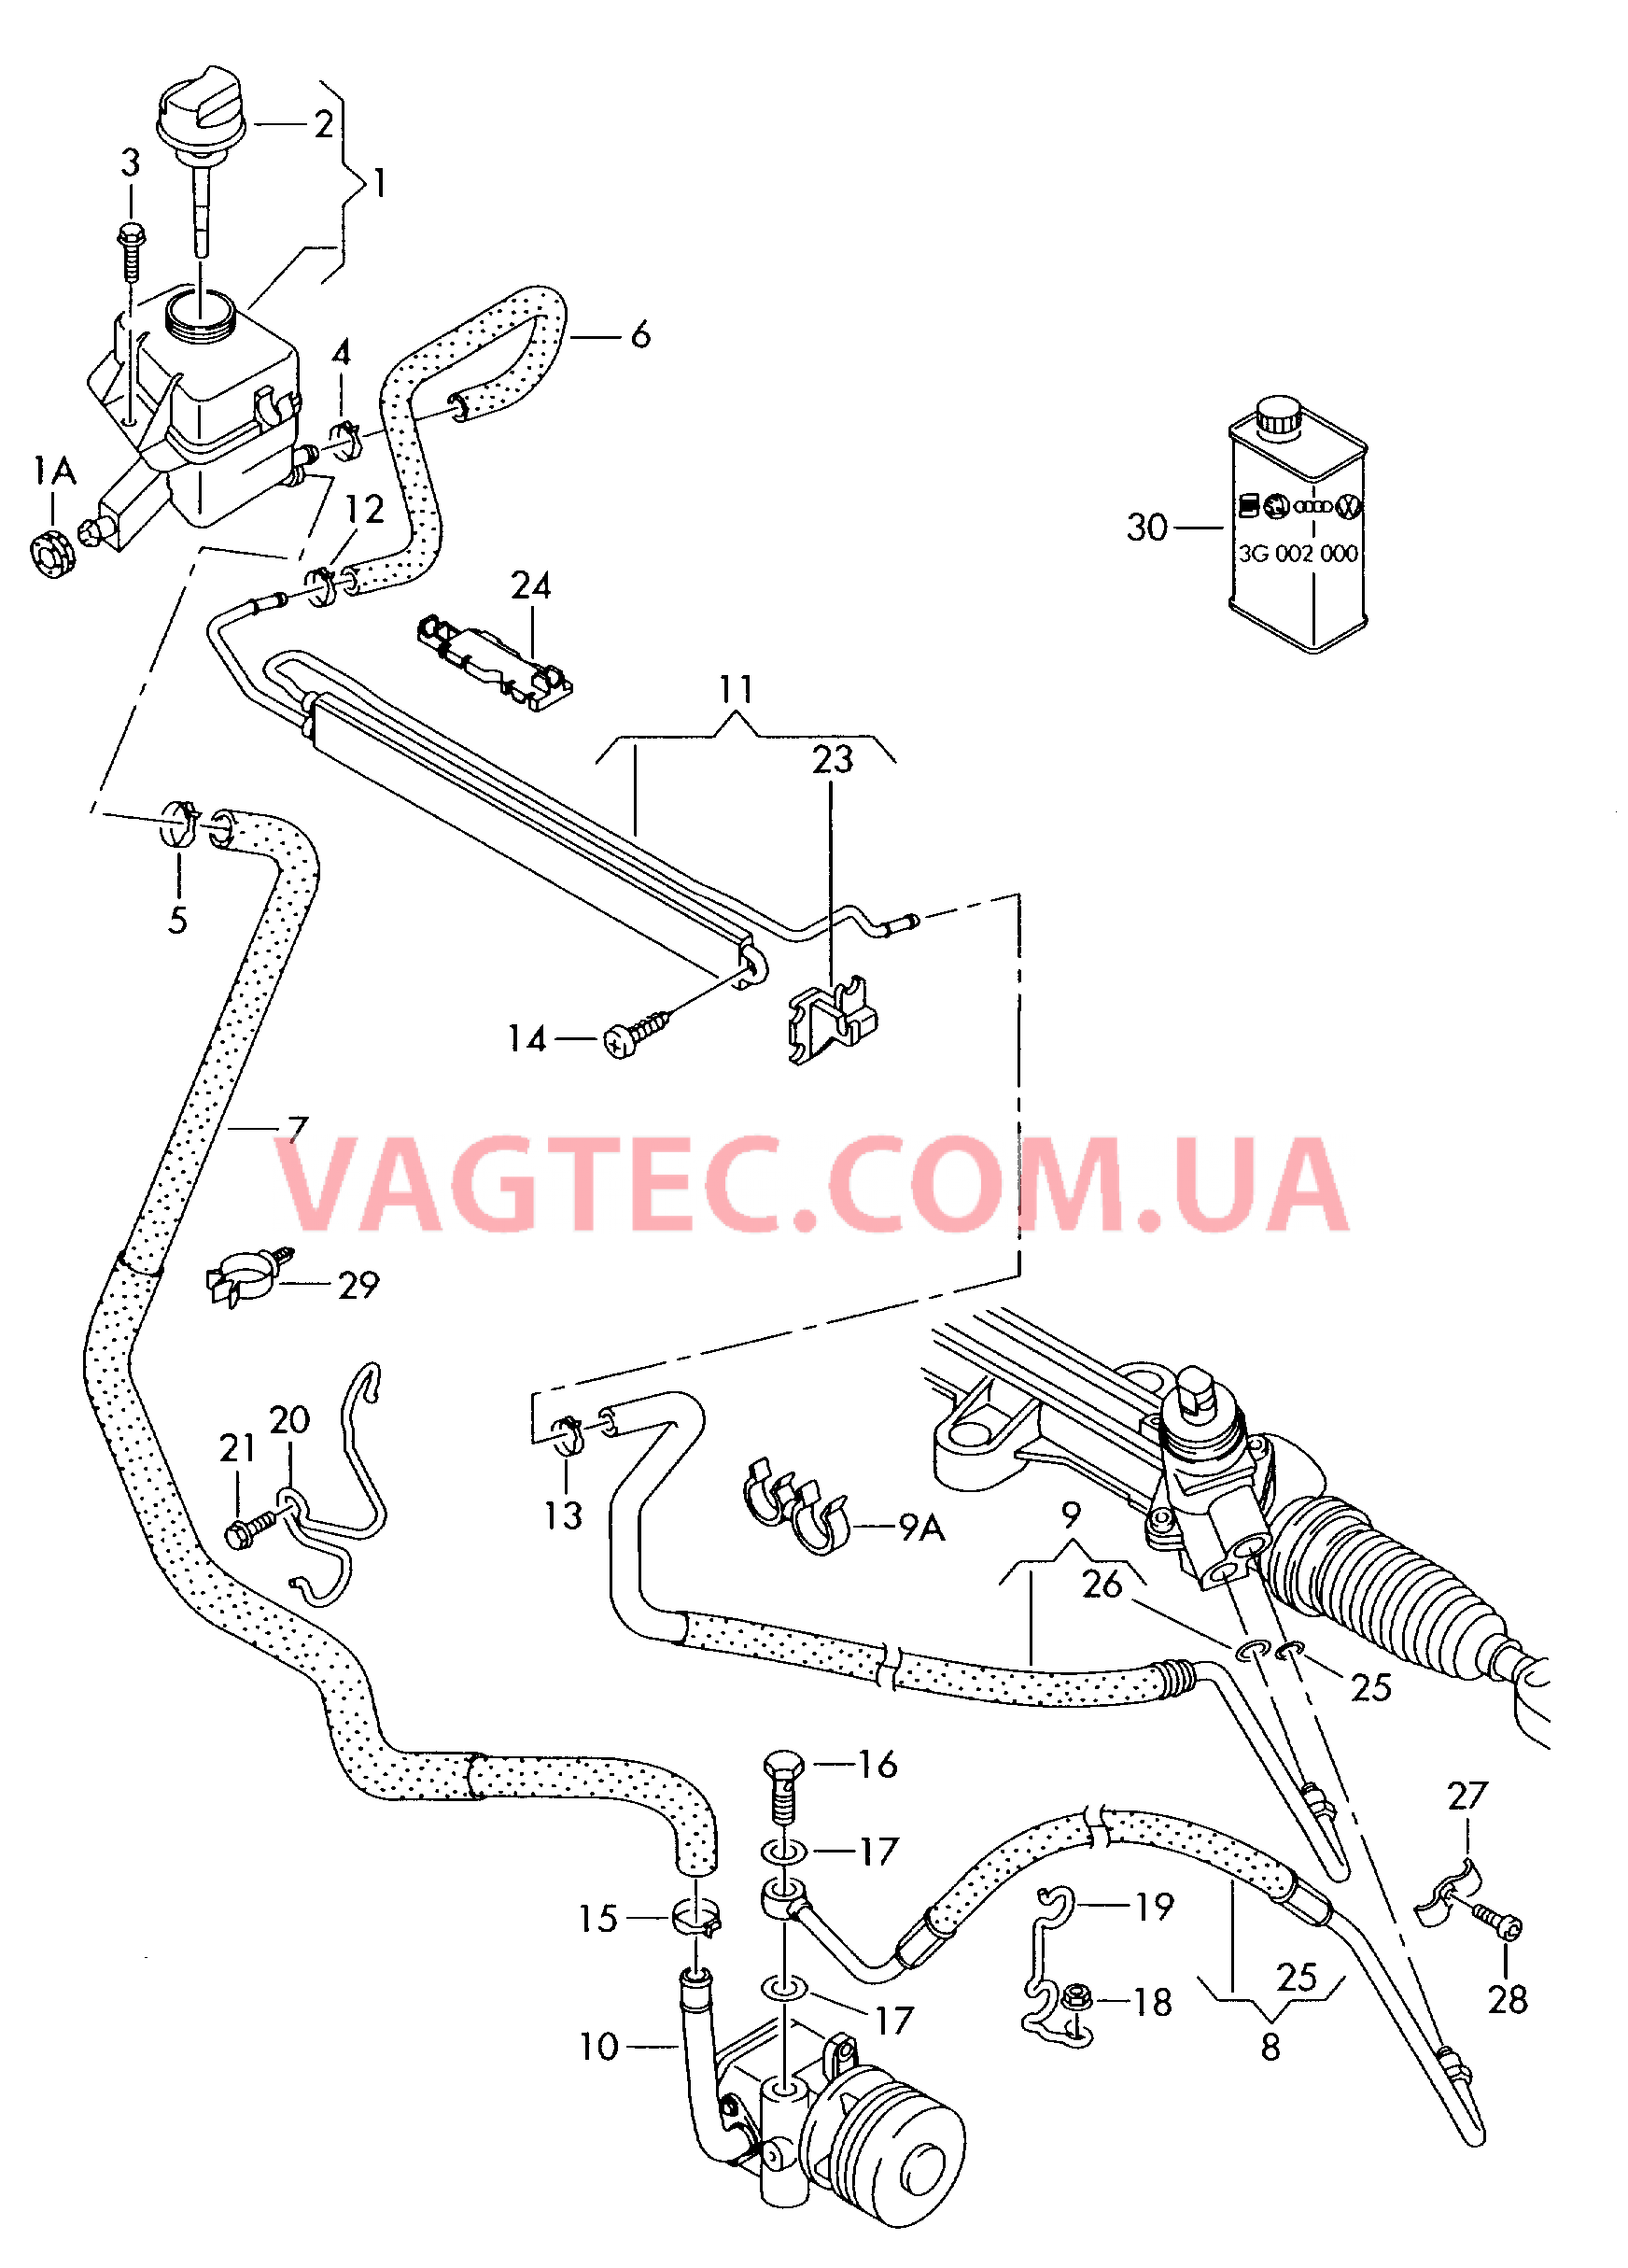 Масляный бачок с соединительными деталями, шлангами  для ГУРа  для VOLKSWAGEN Transporter 2007-1